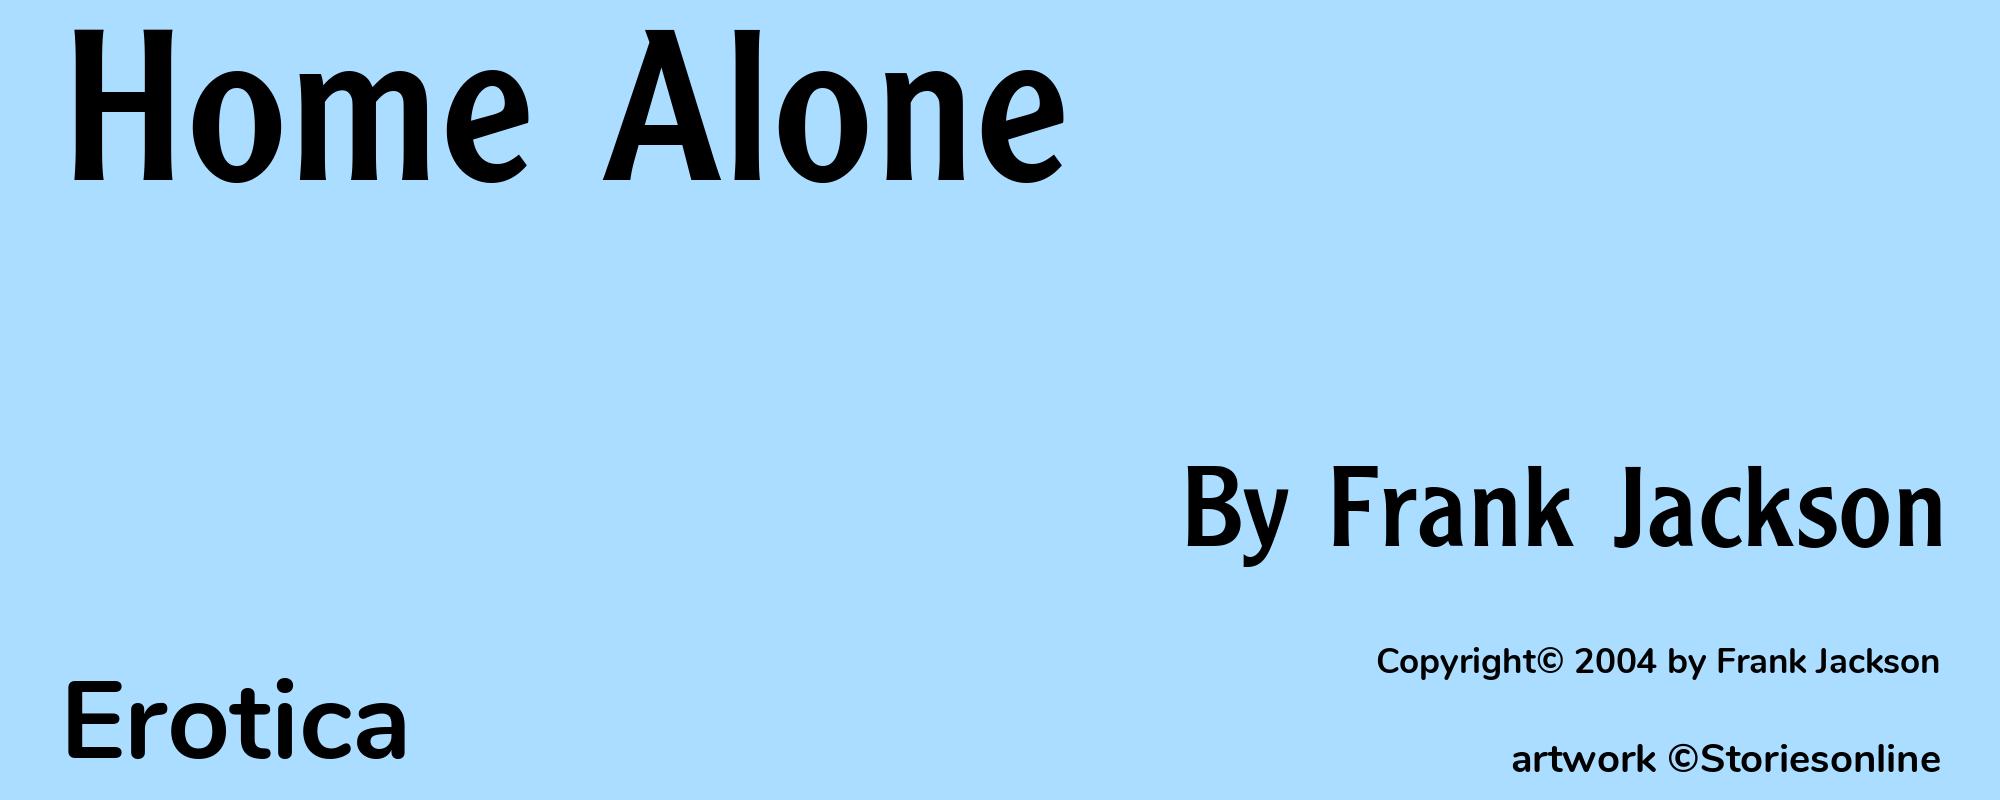 Home Alone - Cover